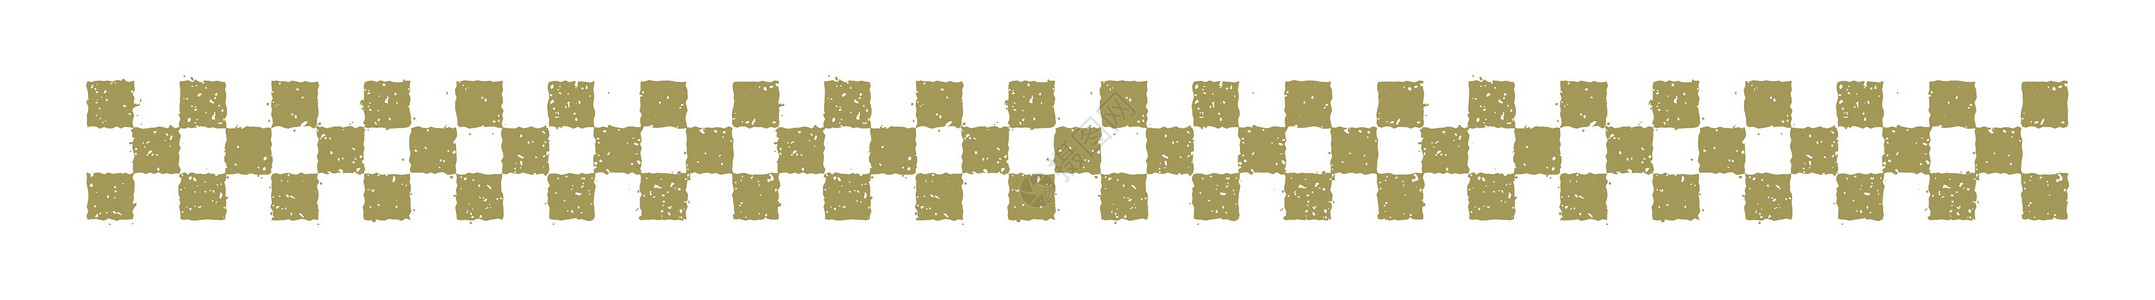 一年一次新年卡片邮票插图方格图案正方形格子材料形象符号流行音乐金子载体植物幸运符插画